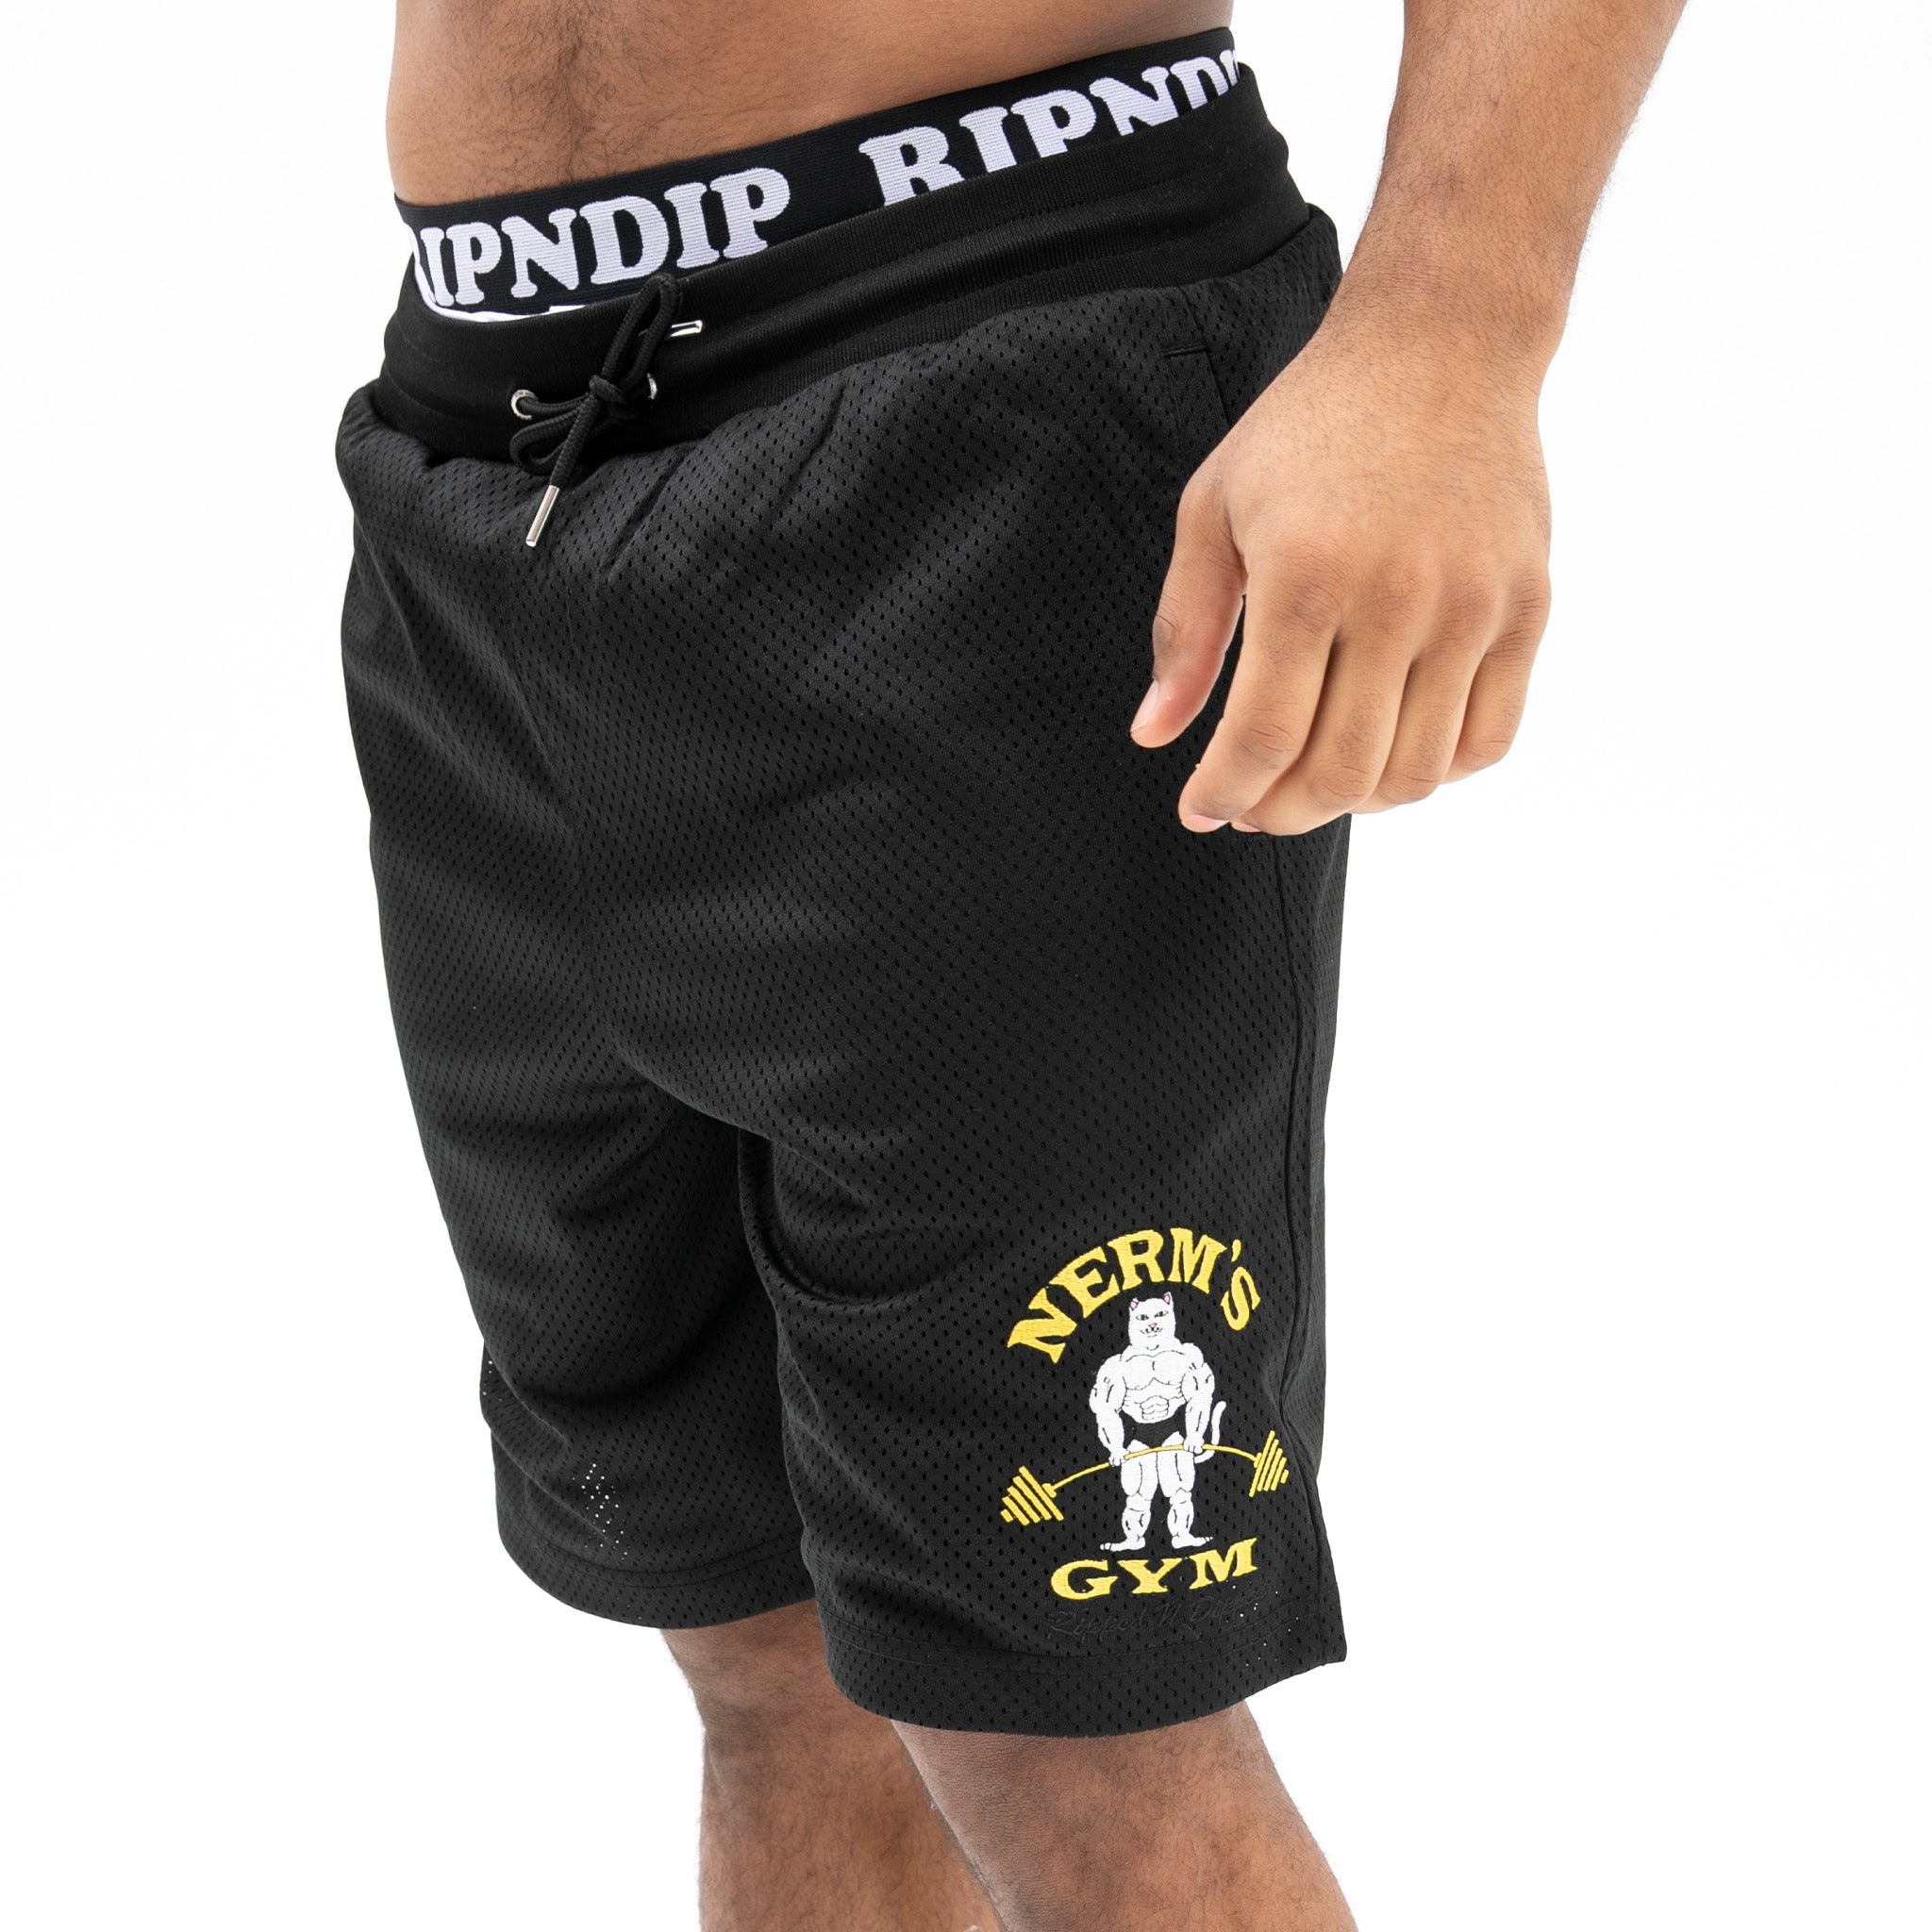 RipNDip Ripped n Dipped Mesh Shorts (Black)